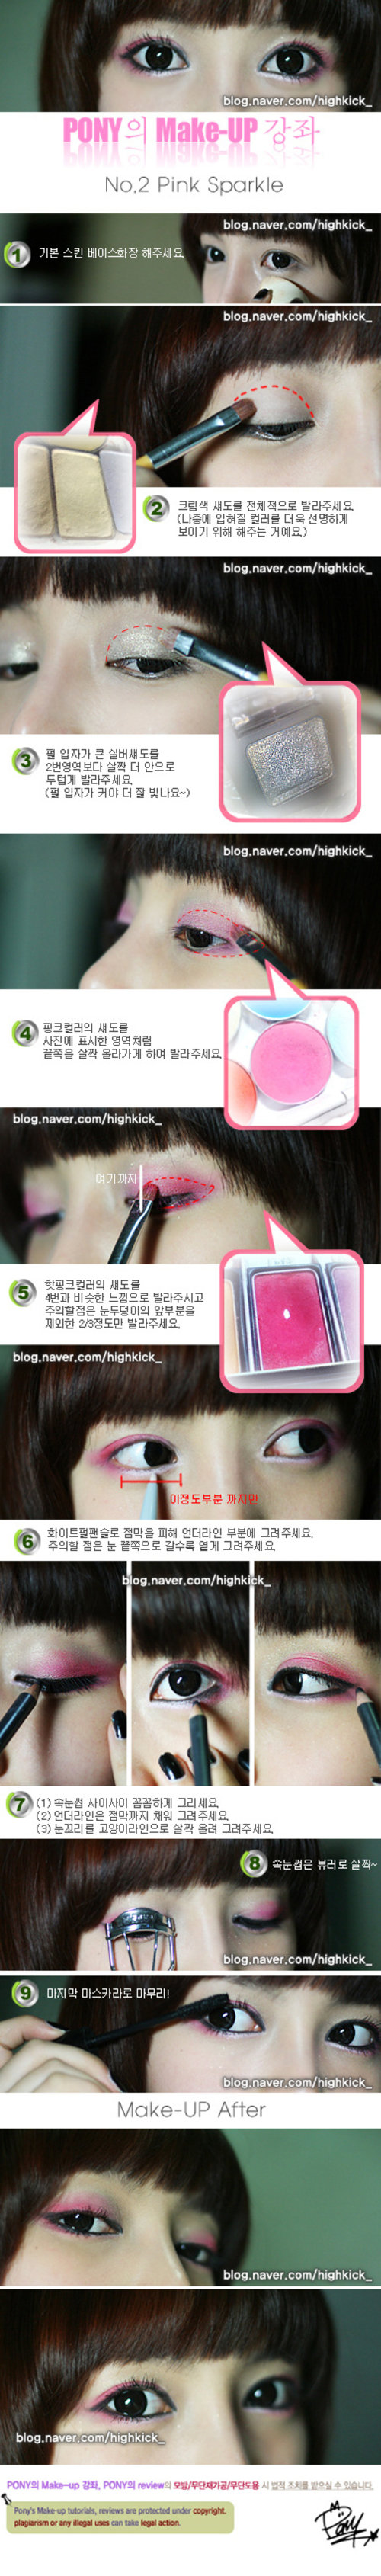 Pink Sparkle Makeup Tutorial